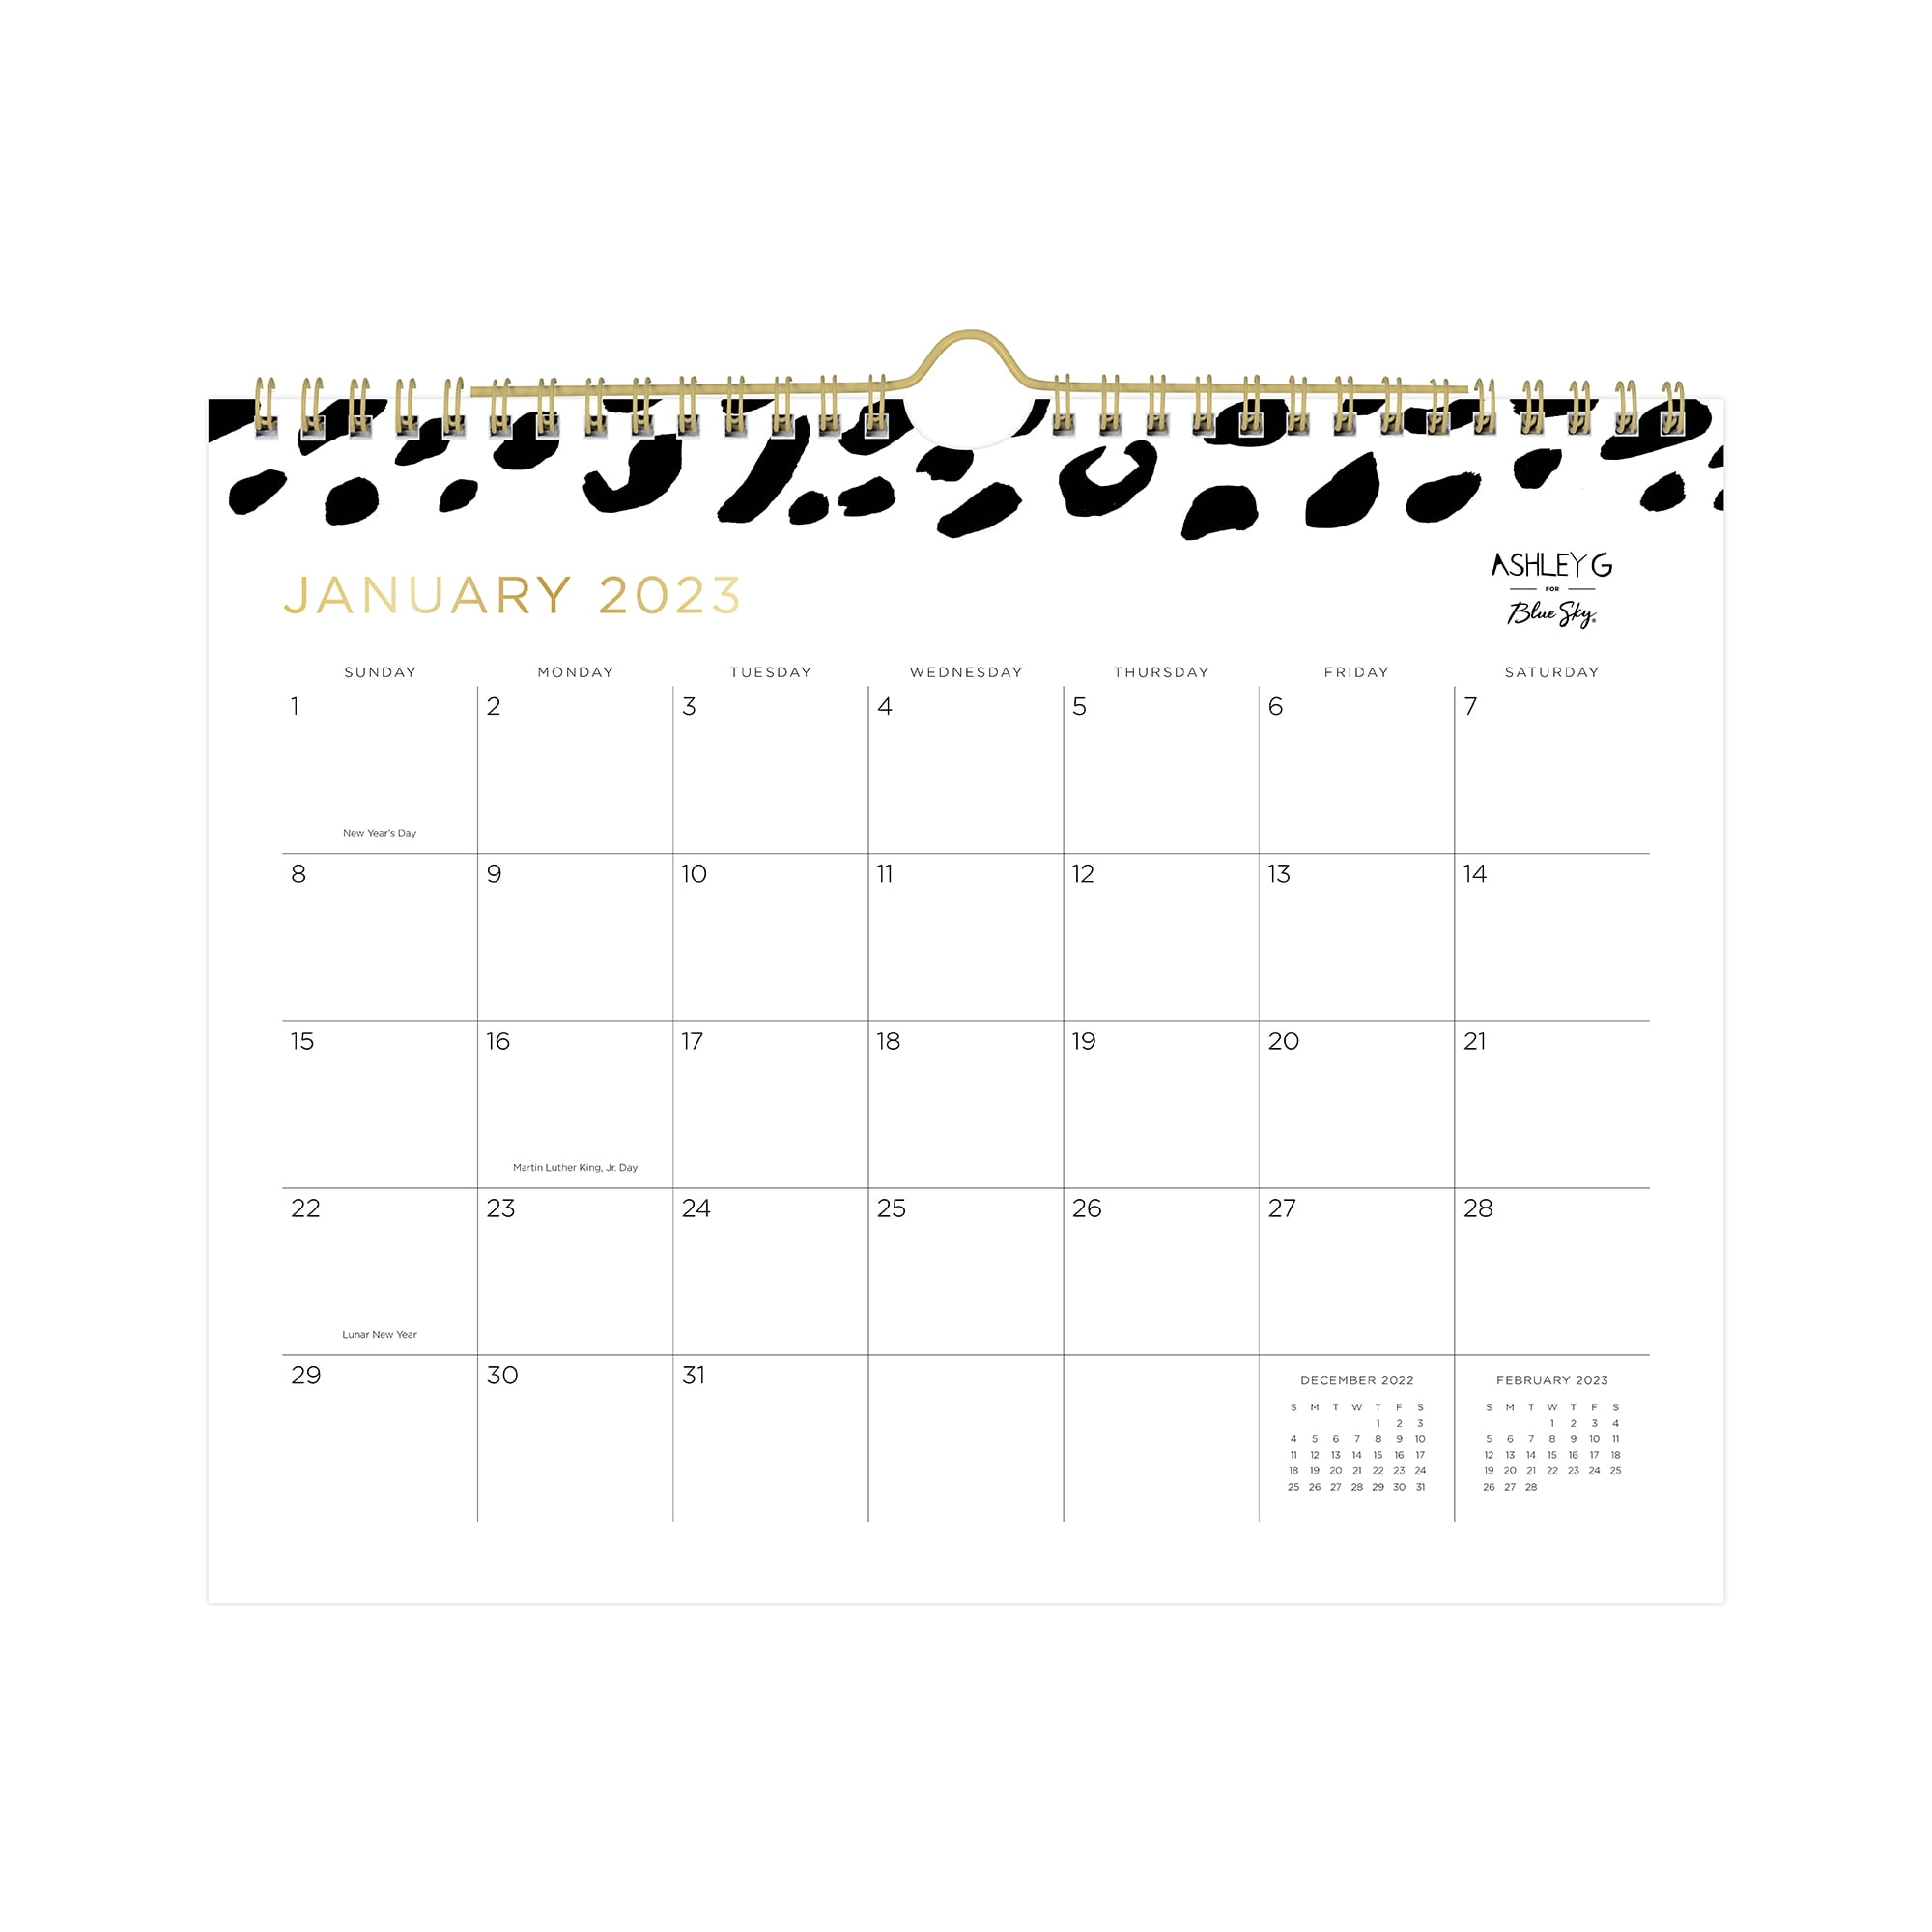 2023 Wall Calendar, 11x8.75, Ashley G for Blue Sky, Leopard Black